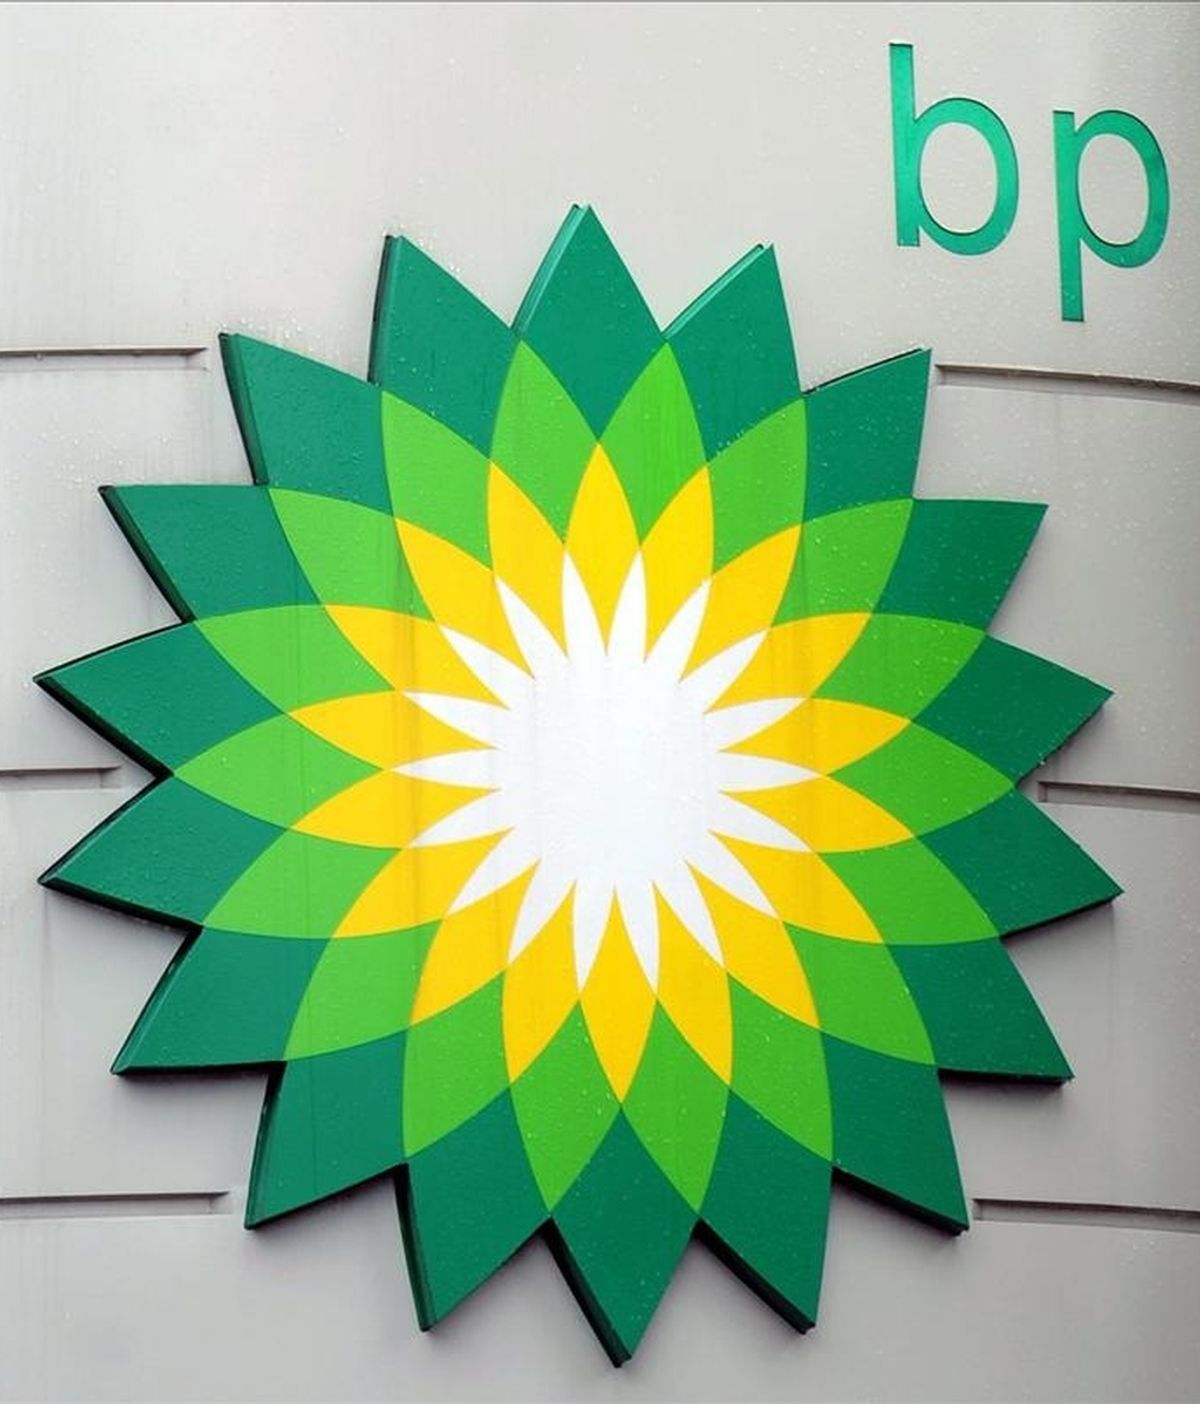 La petrolera británica BP se dispone a anunciar un importante acuerdo con la petrolera estatal rusa Rosneft, según informó hoy la BBC. EFE/Archivo